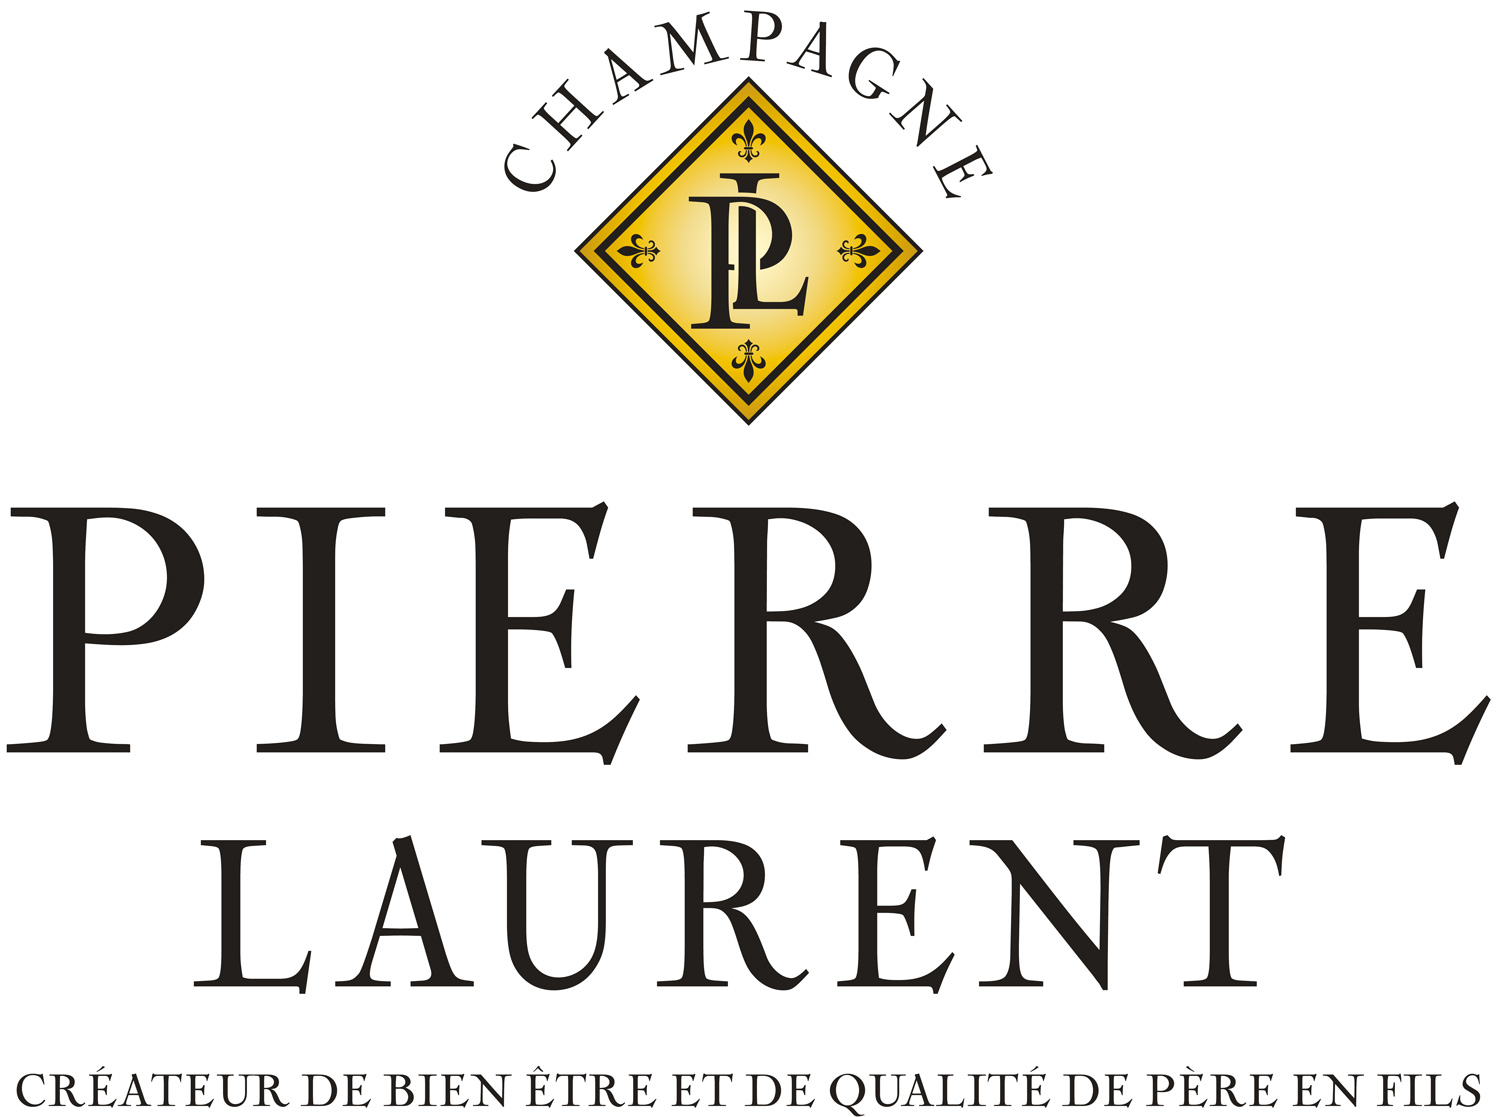 Champagne Pierre Laurent